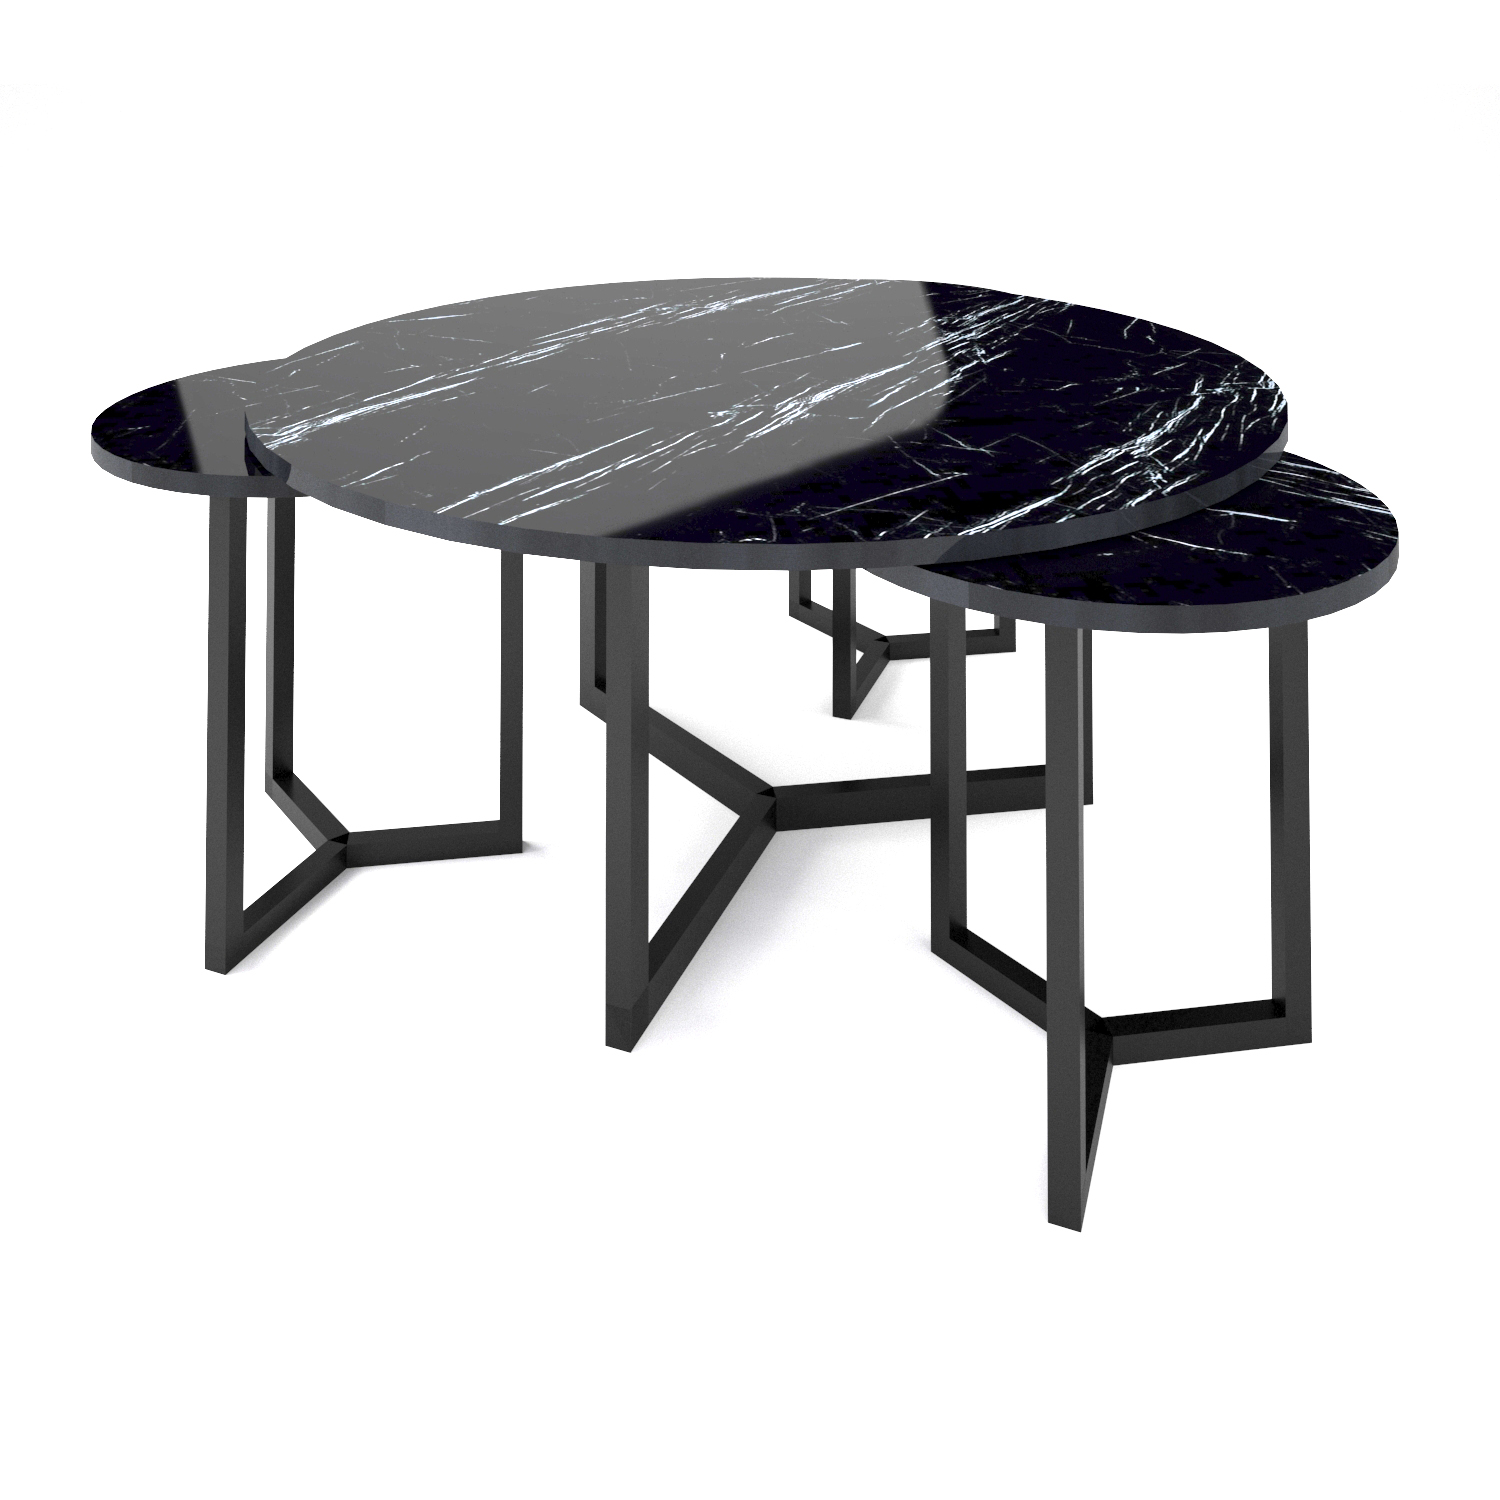 ست میز پذیرایی مدرن (میز جلو مبلی و عسلی) - مدل FTS101